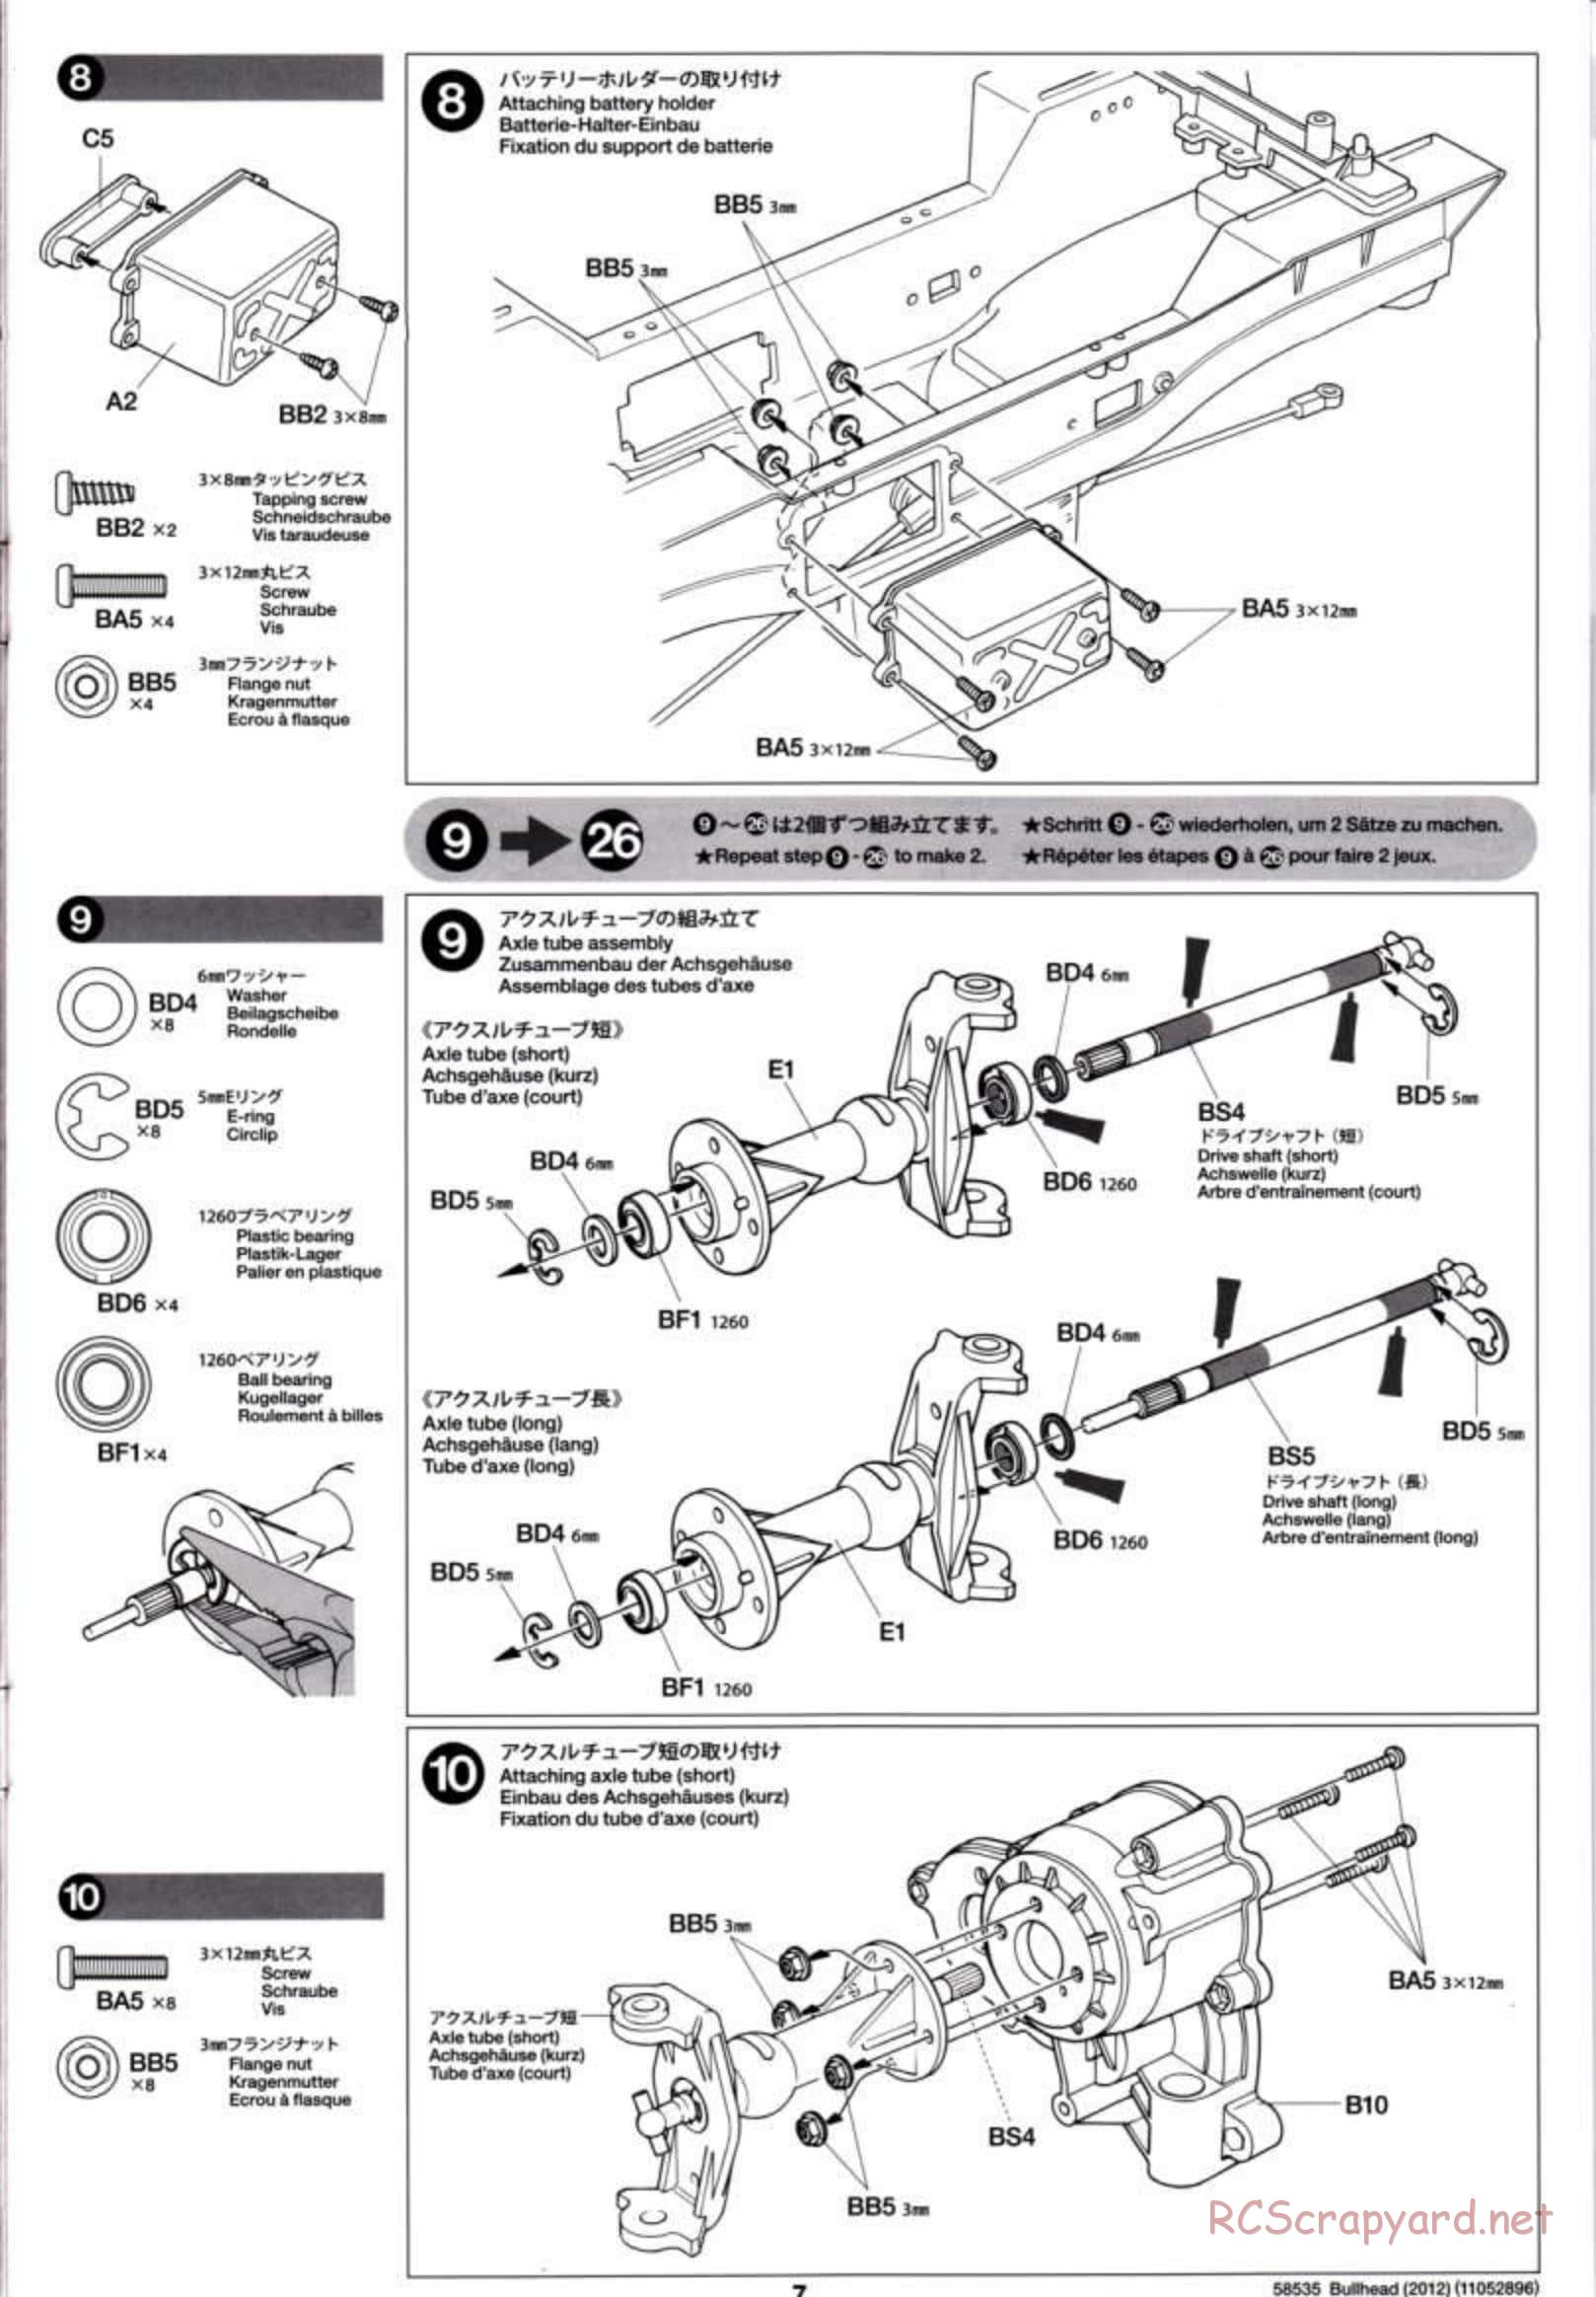 Tamiya - Bullhead 2012 - CB Chassis - Manual - Page 7